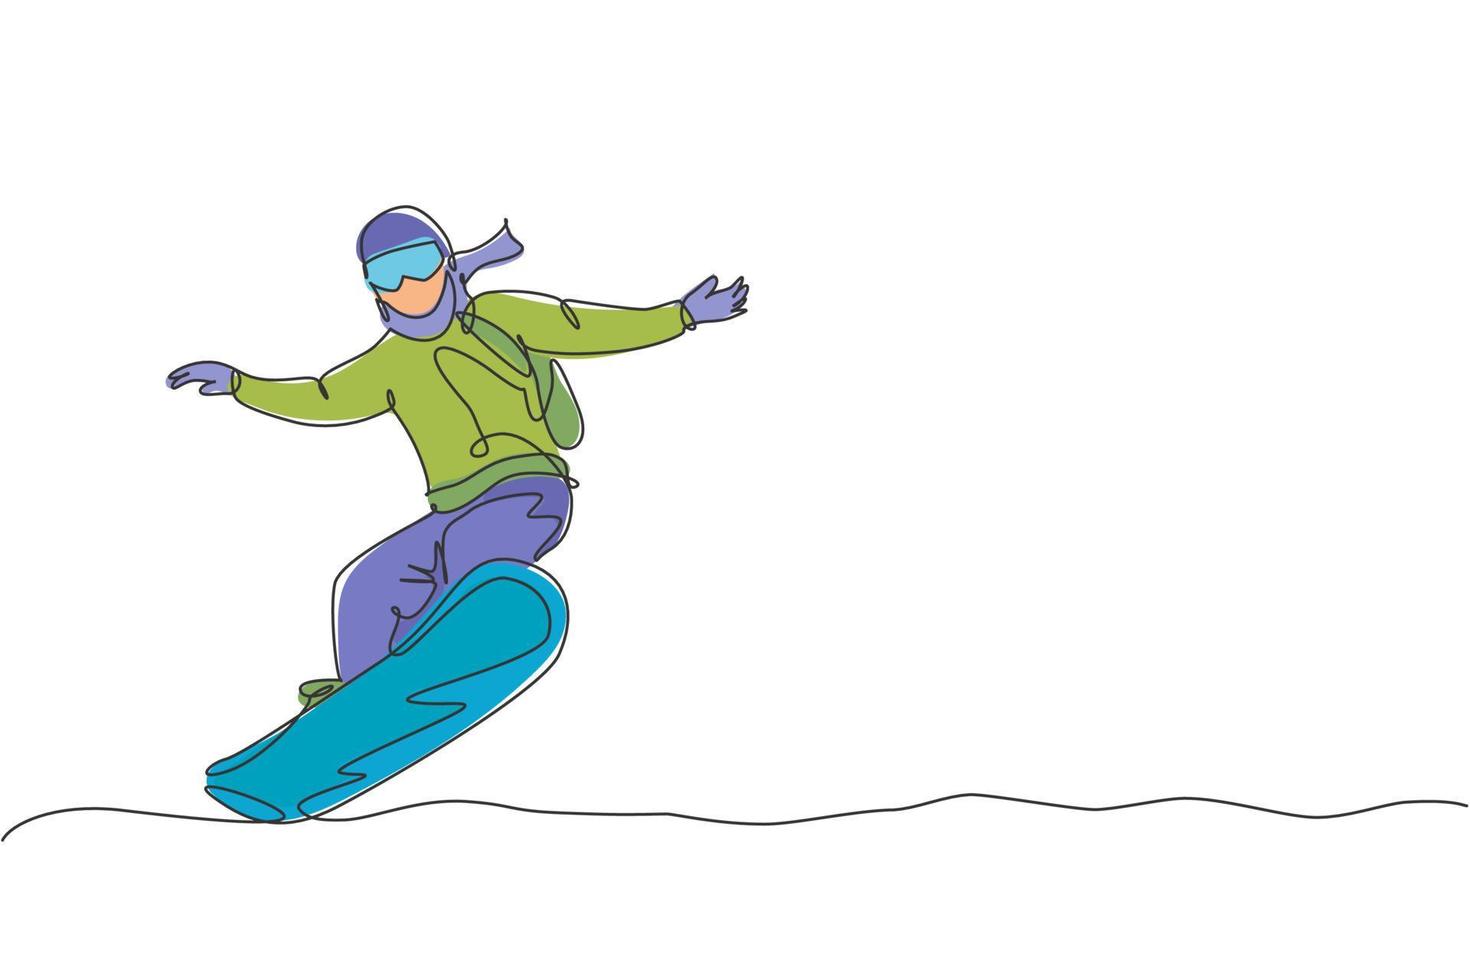 een doorlopende lijntekening van jonge sportieve man snowboarder snowboard rijden in alpen besneeuwde poeder berg. winter levensstijl sport concept. dynamische enkele lijn tekenen grafisch ontwerp vectorillustratie vector